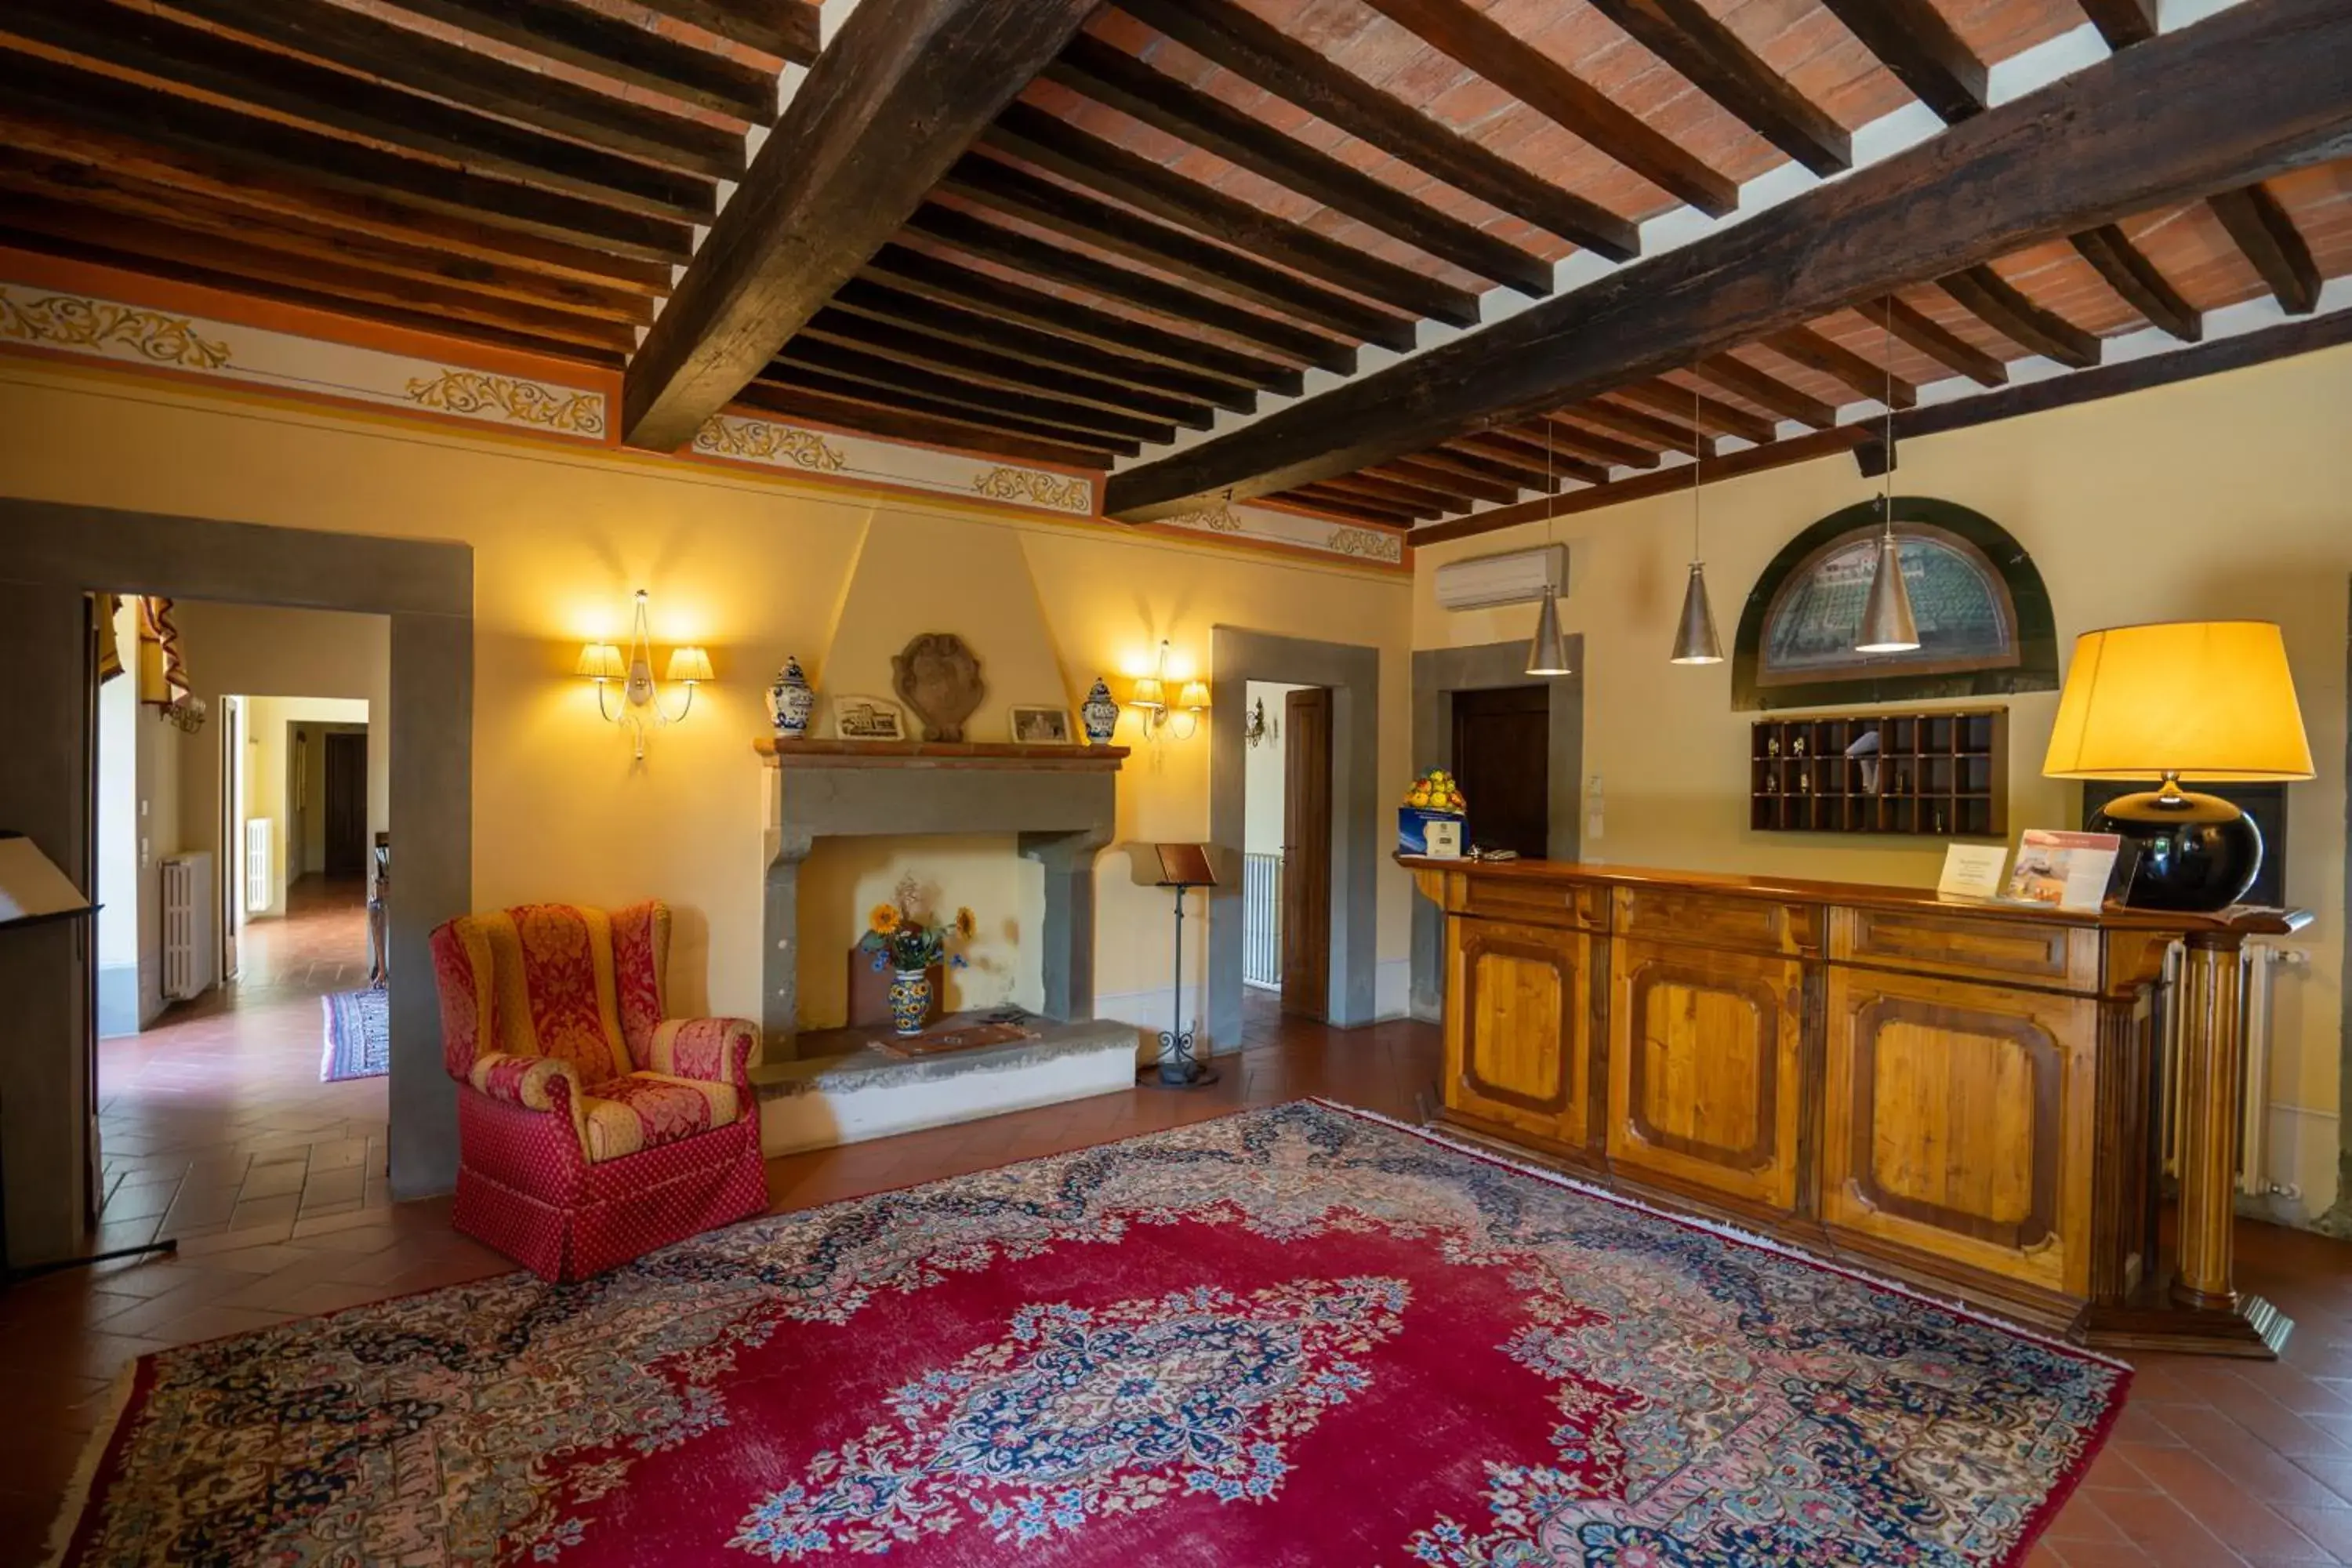 Lobby or reception in Relais Borgo San Pietro